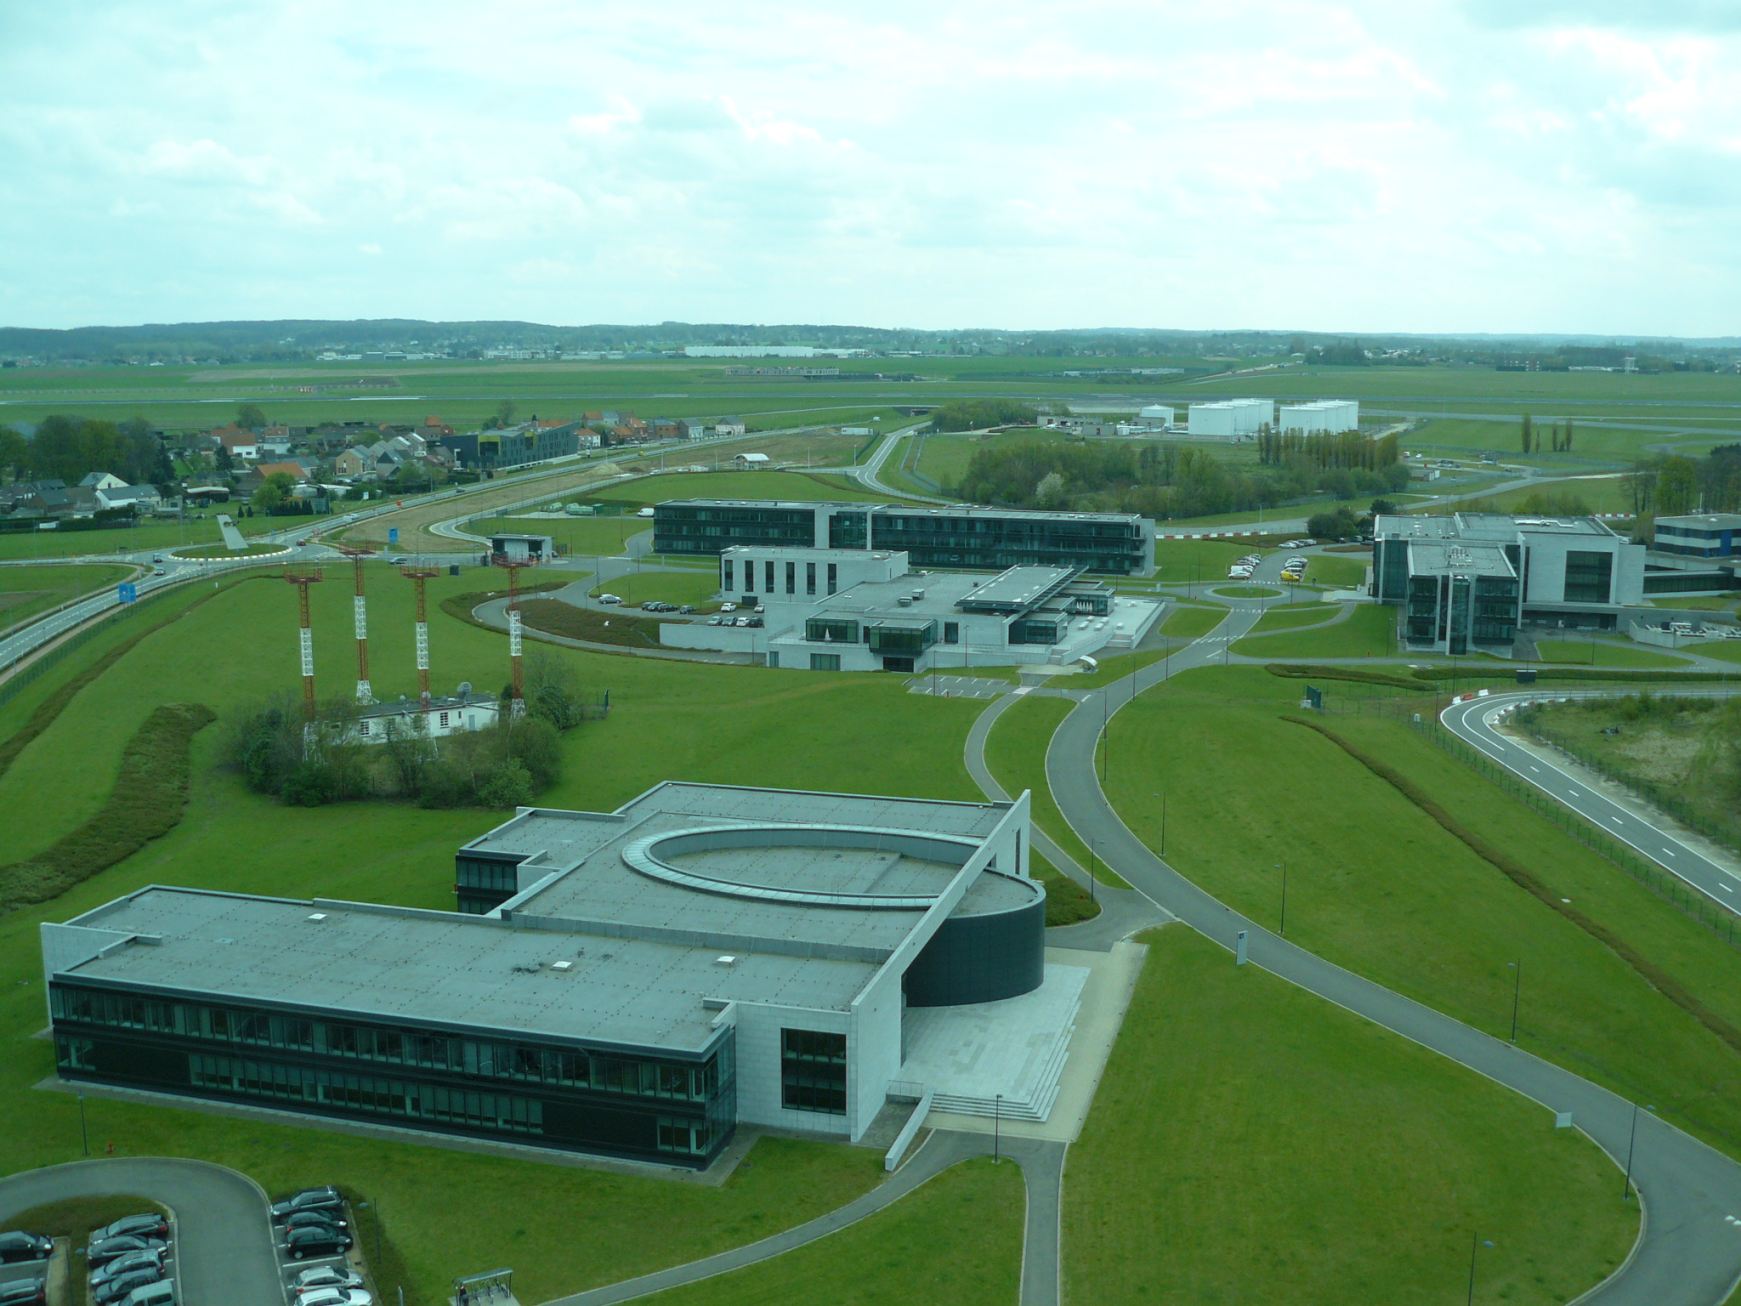 Belgocontrol-létesítmények a toronyból nézve: előtérben az oktatási központ, hátrébb jobbra az új CANAC 2 körzeti irányító központ